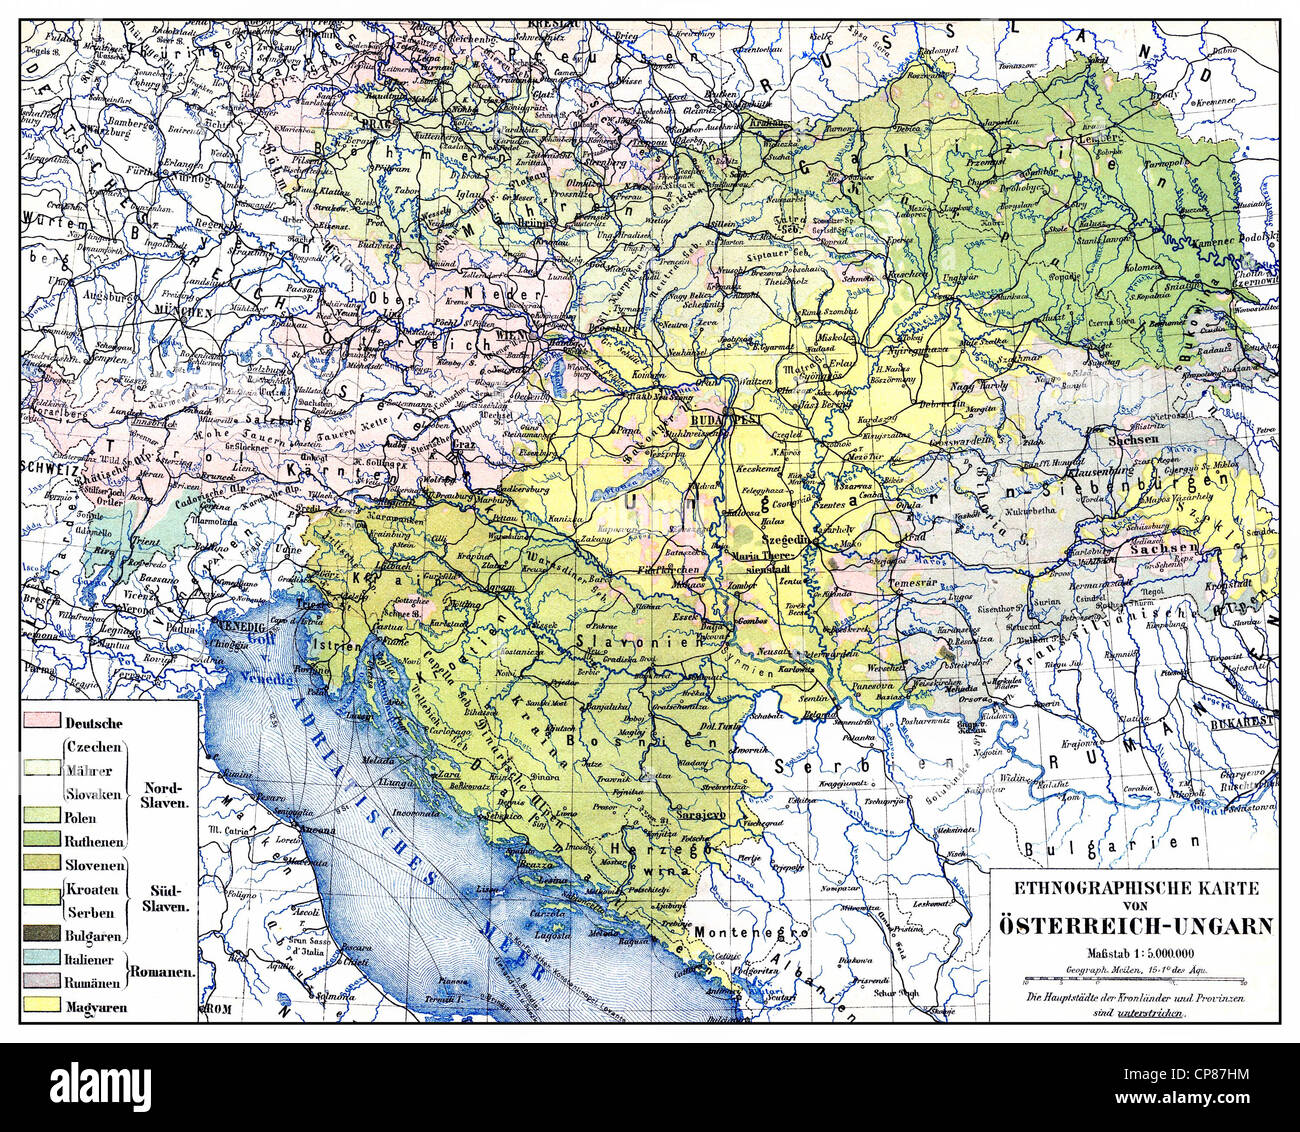 Historische ethnologische Karte der österreichisch-ungarischen Doppelmonarchie oder Kuk-Monarchie, für den Zeitraum zwischen 1867 und 1918, ethnische grou Stockfoto